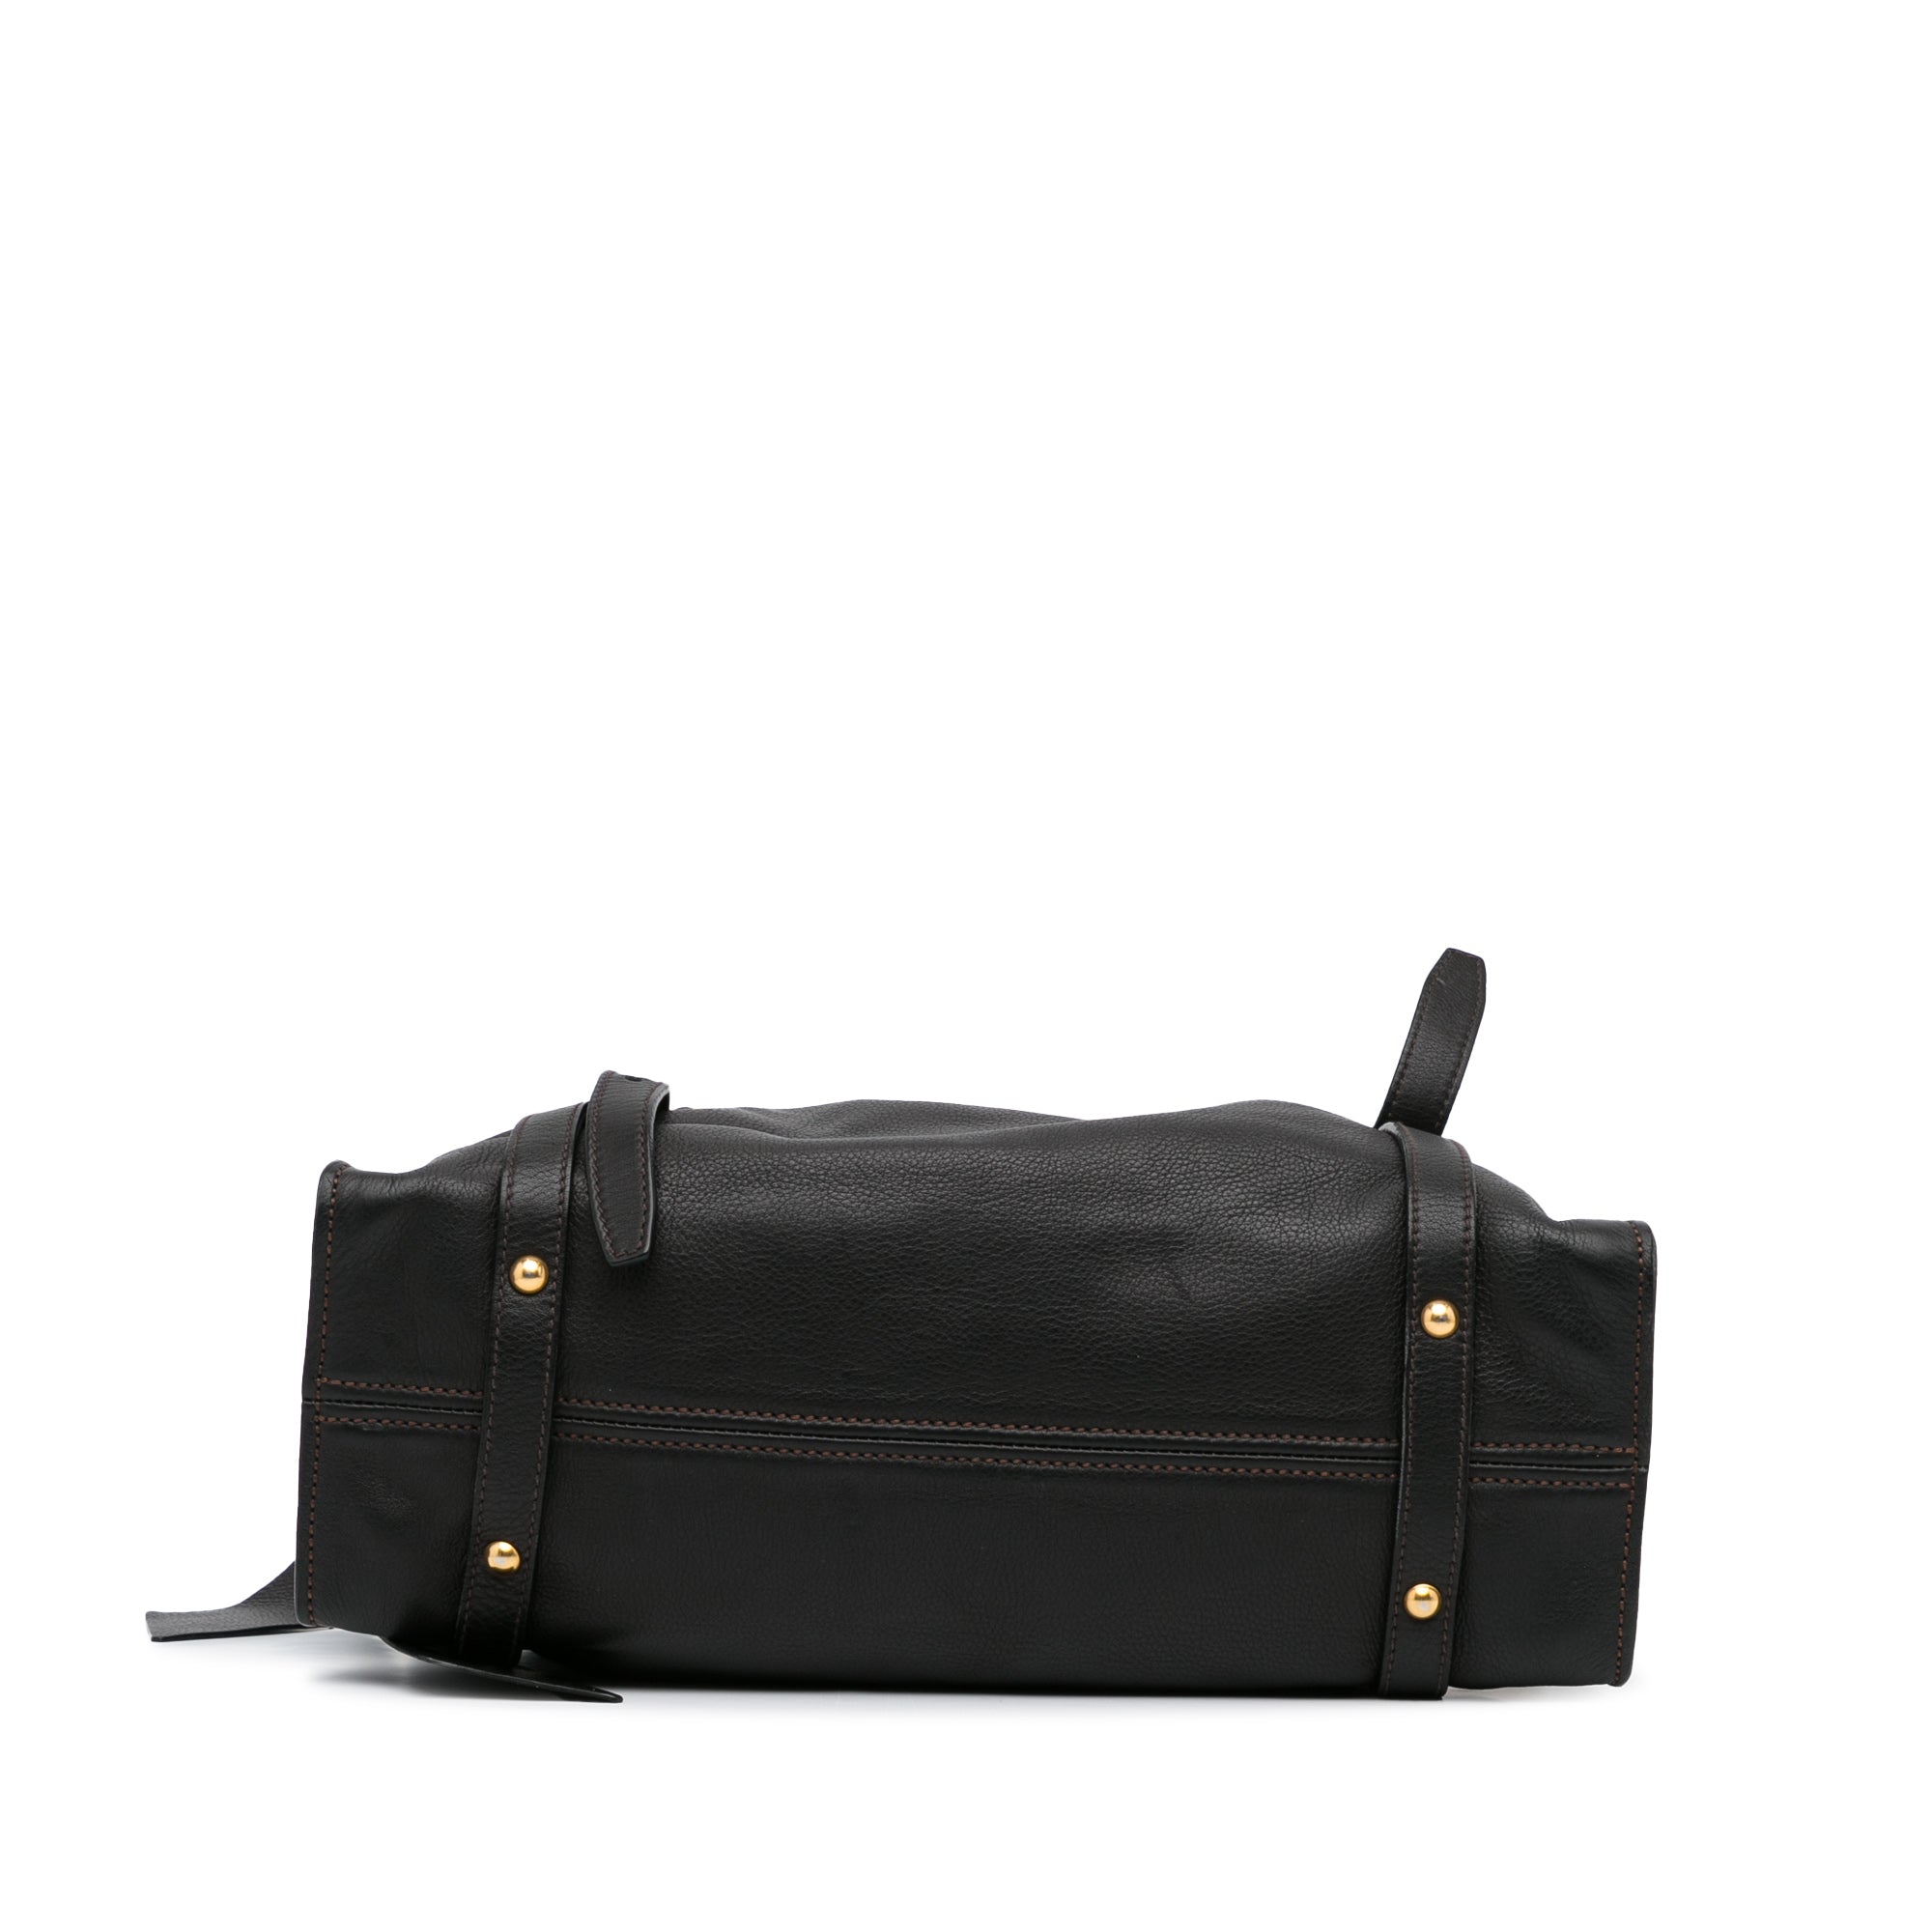 Olive Miu Miu Leather Tote Bag – Designer Revival